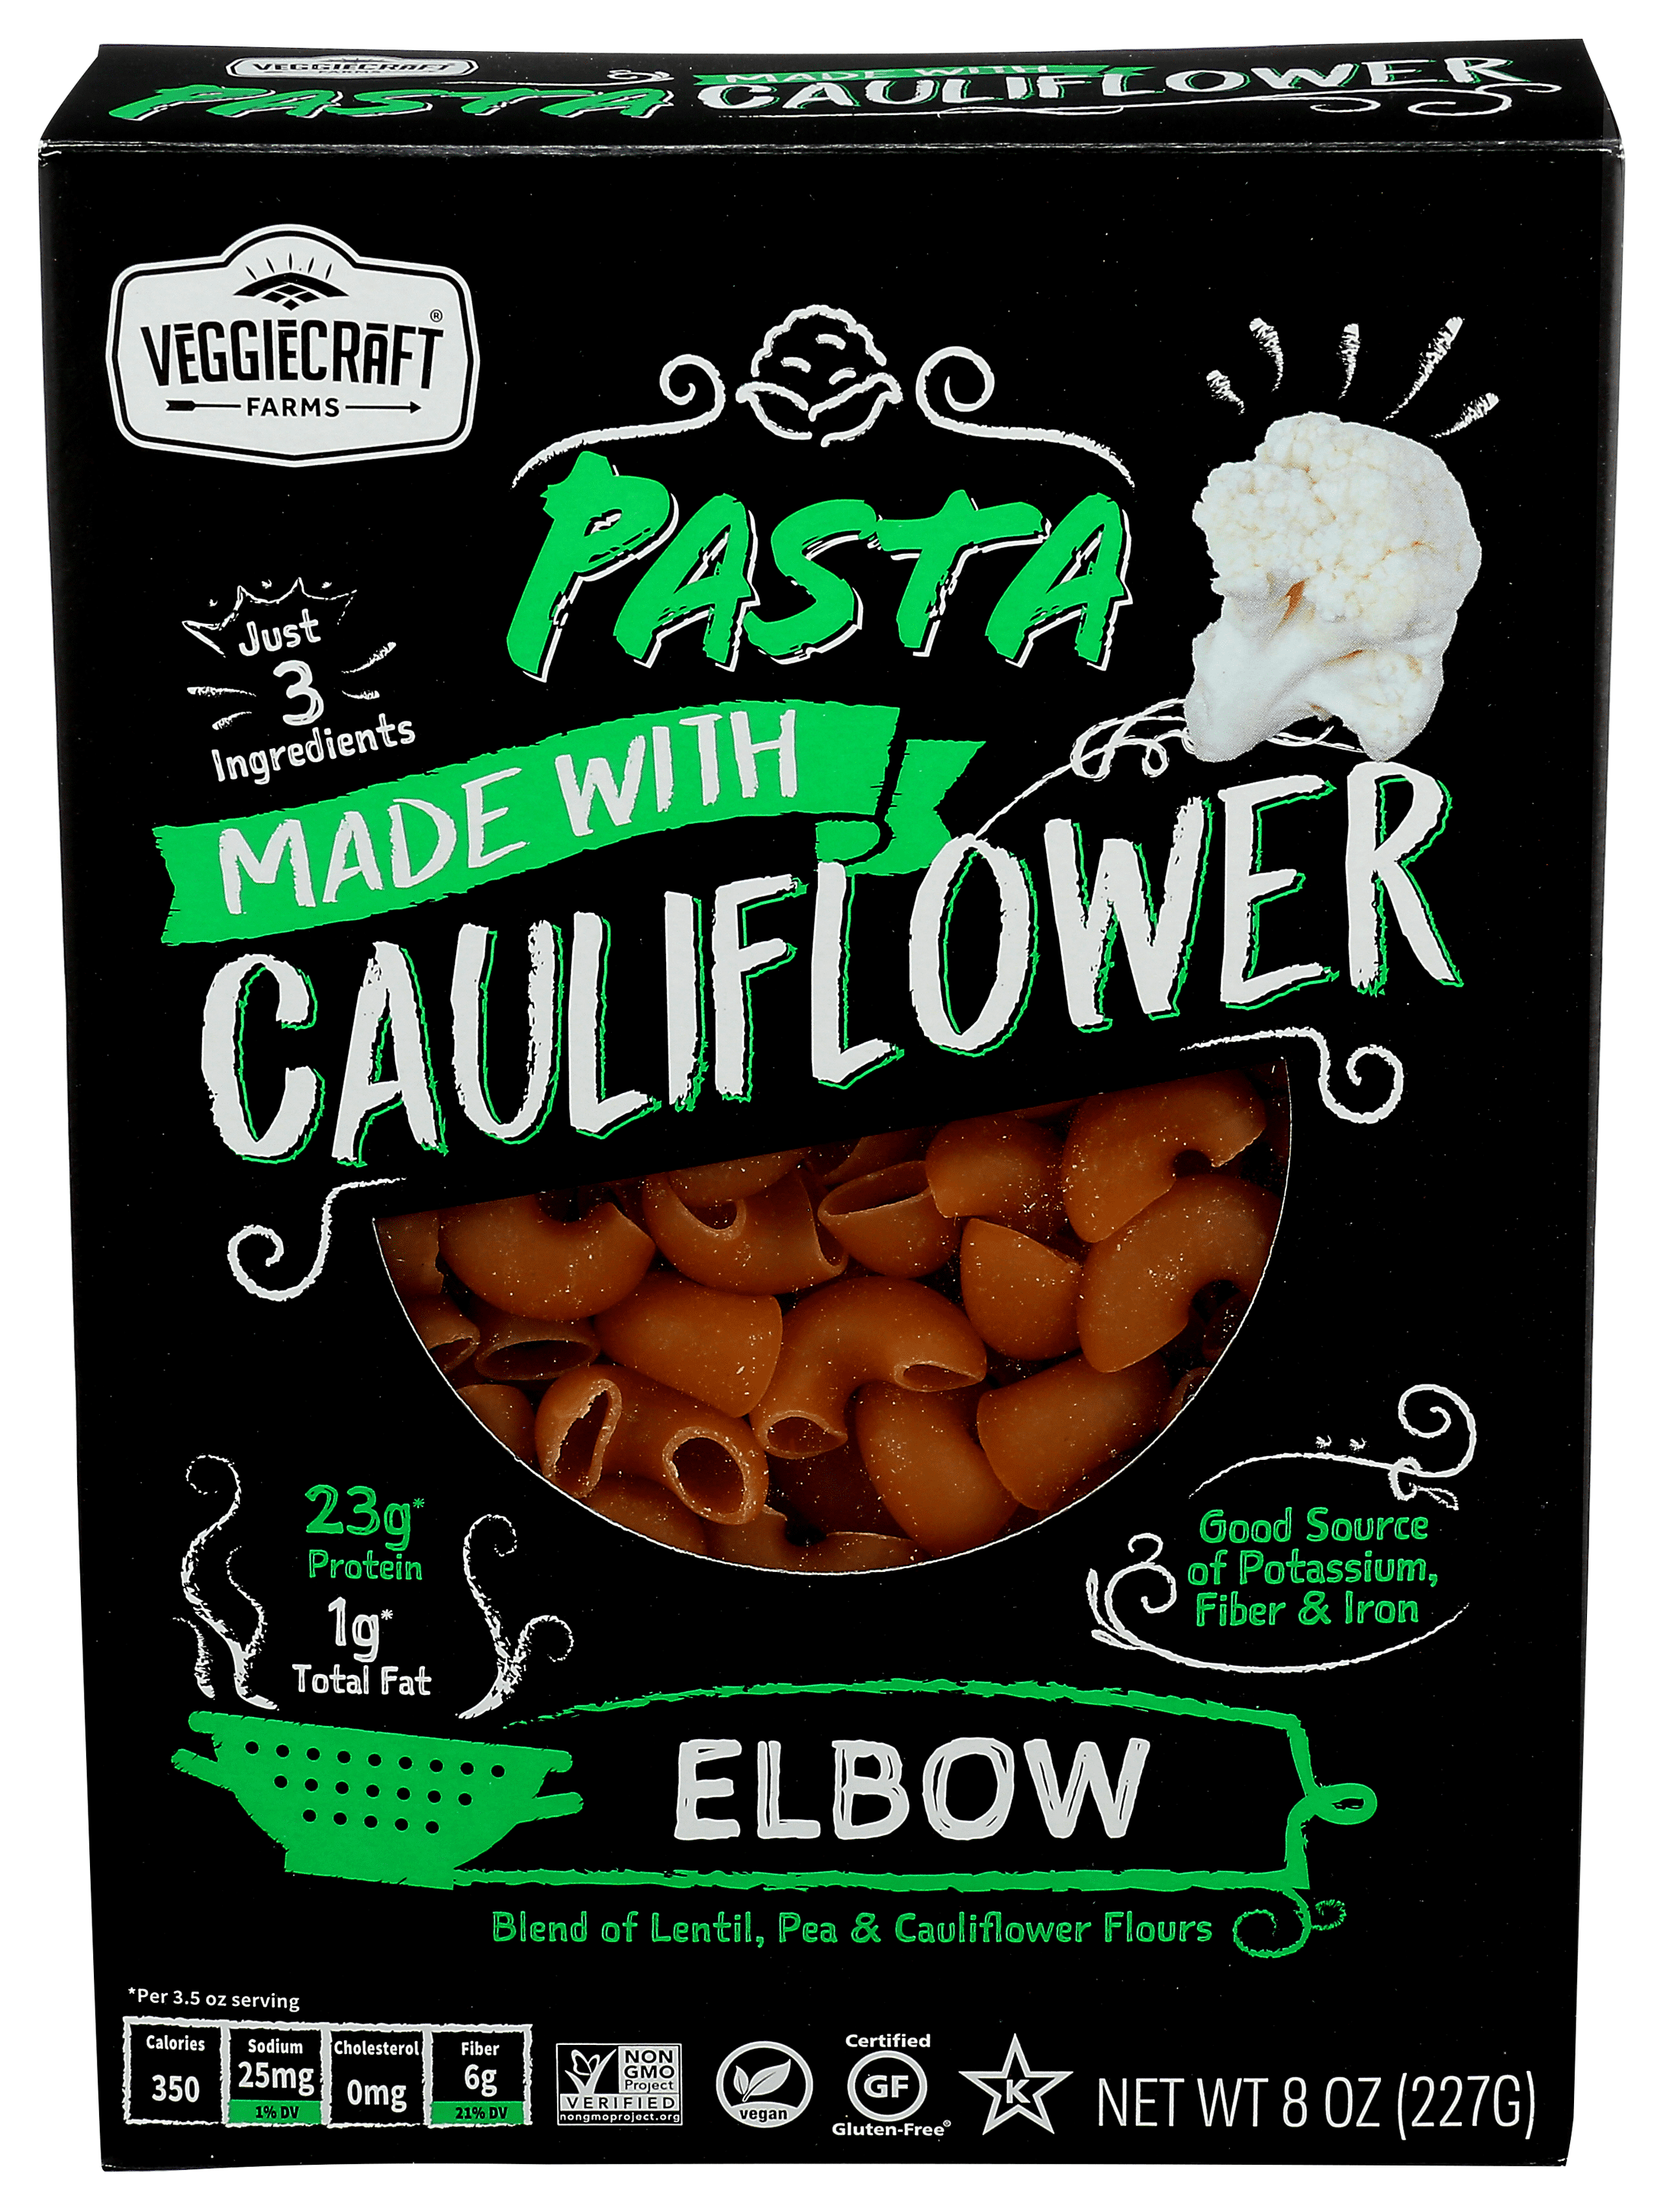 Veggiecraft Cauliflower Pasta Elbow 8 oz Bag